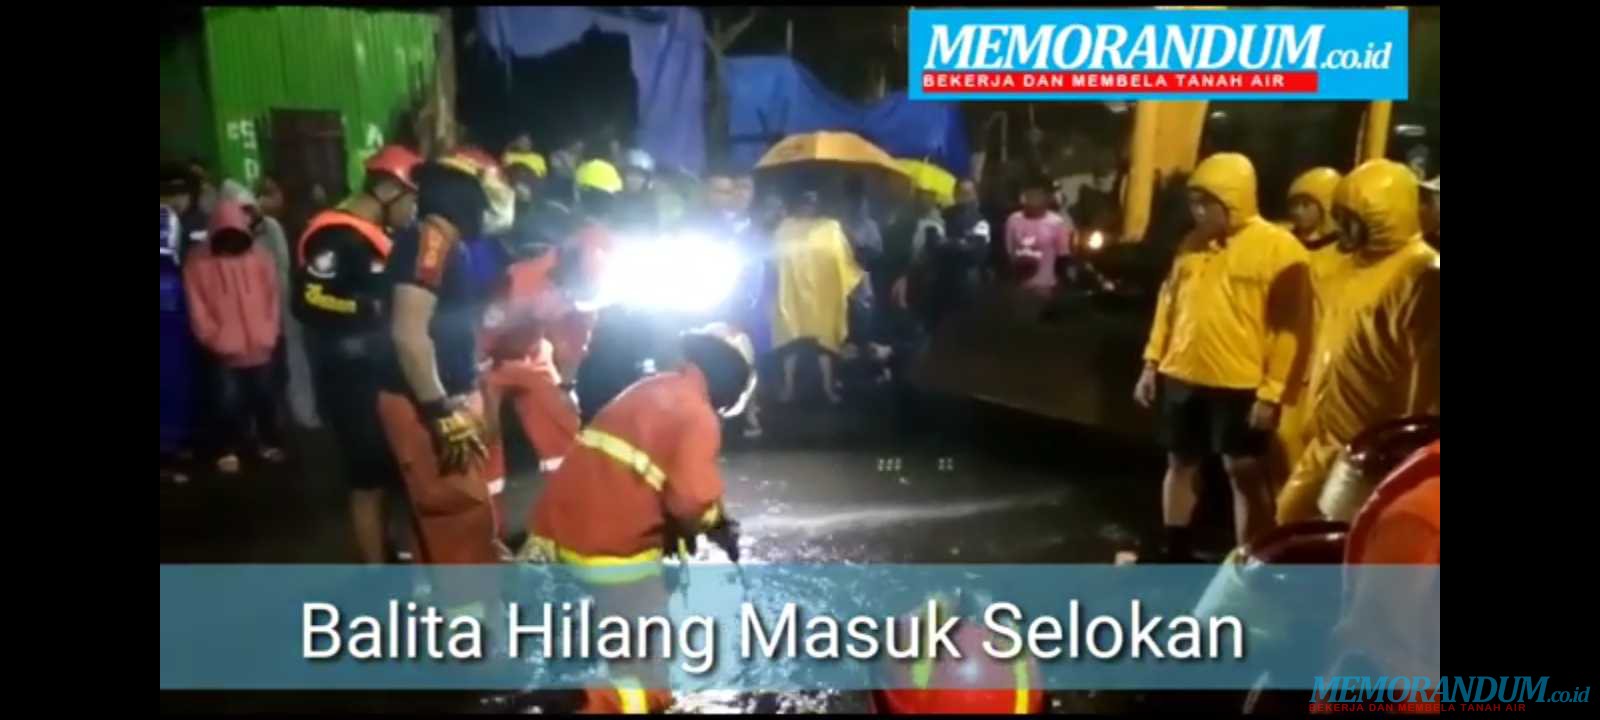 Video : Pencarian Balita Masuk Selokan di Surabaya